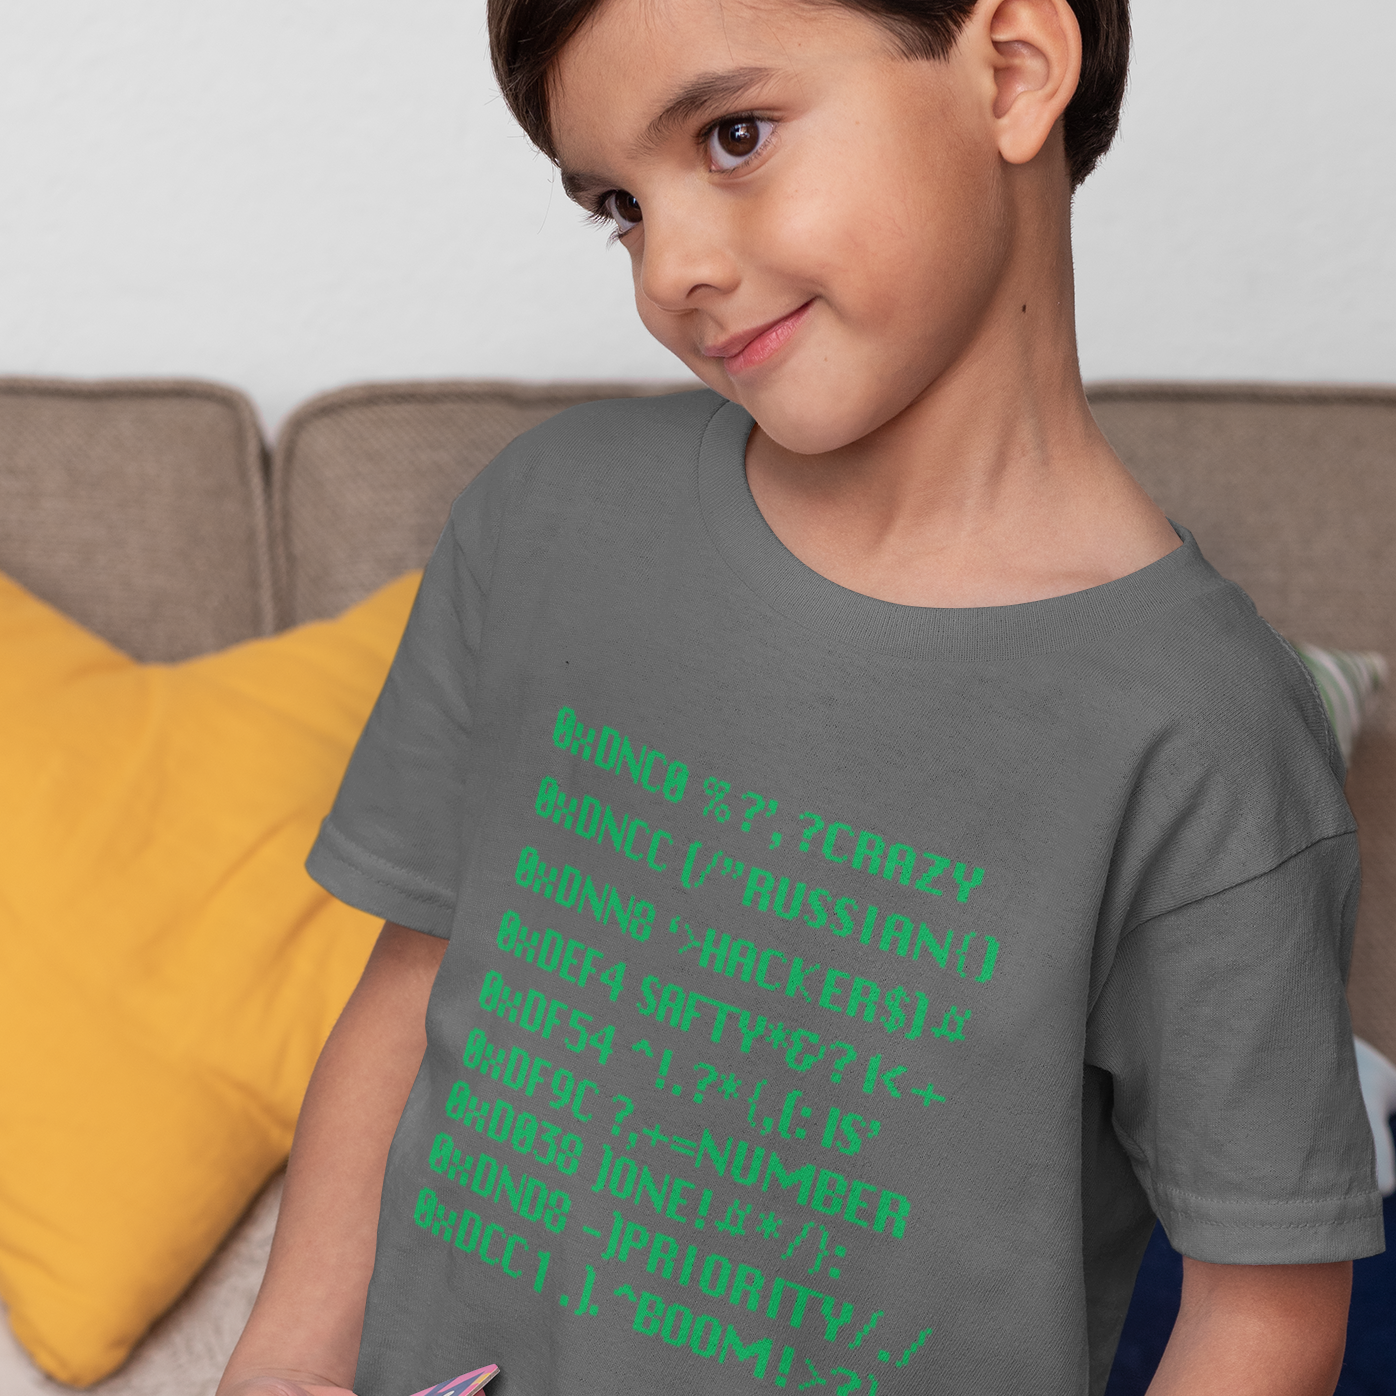 Hacker - Kids Youth T-Shirt